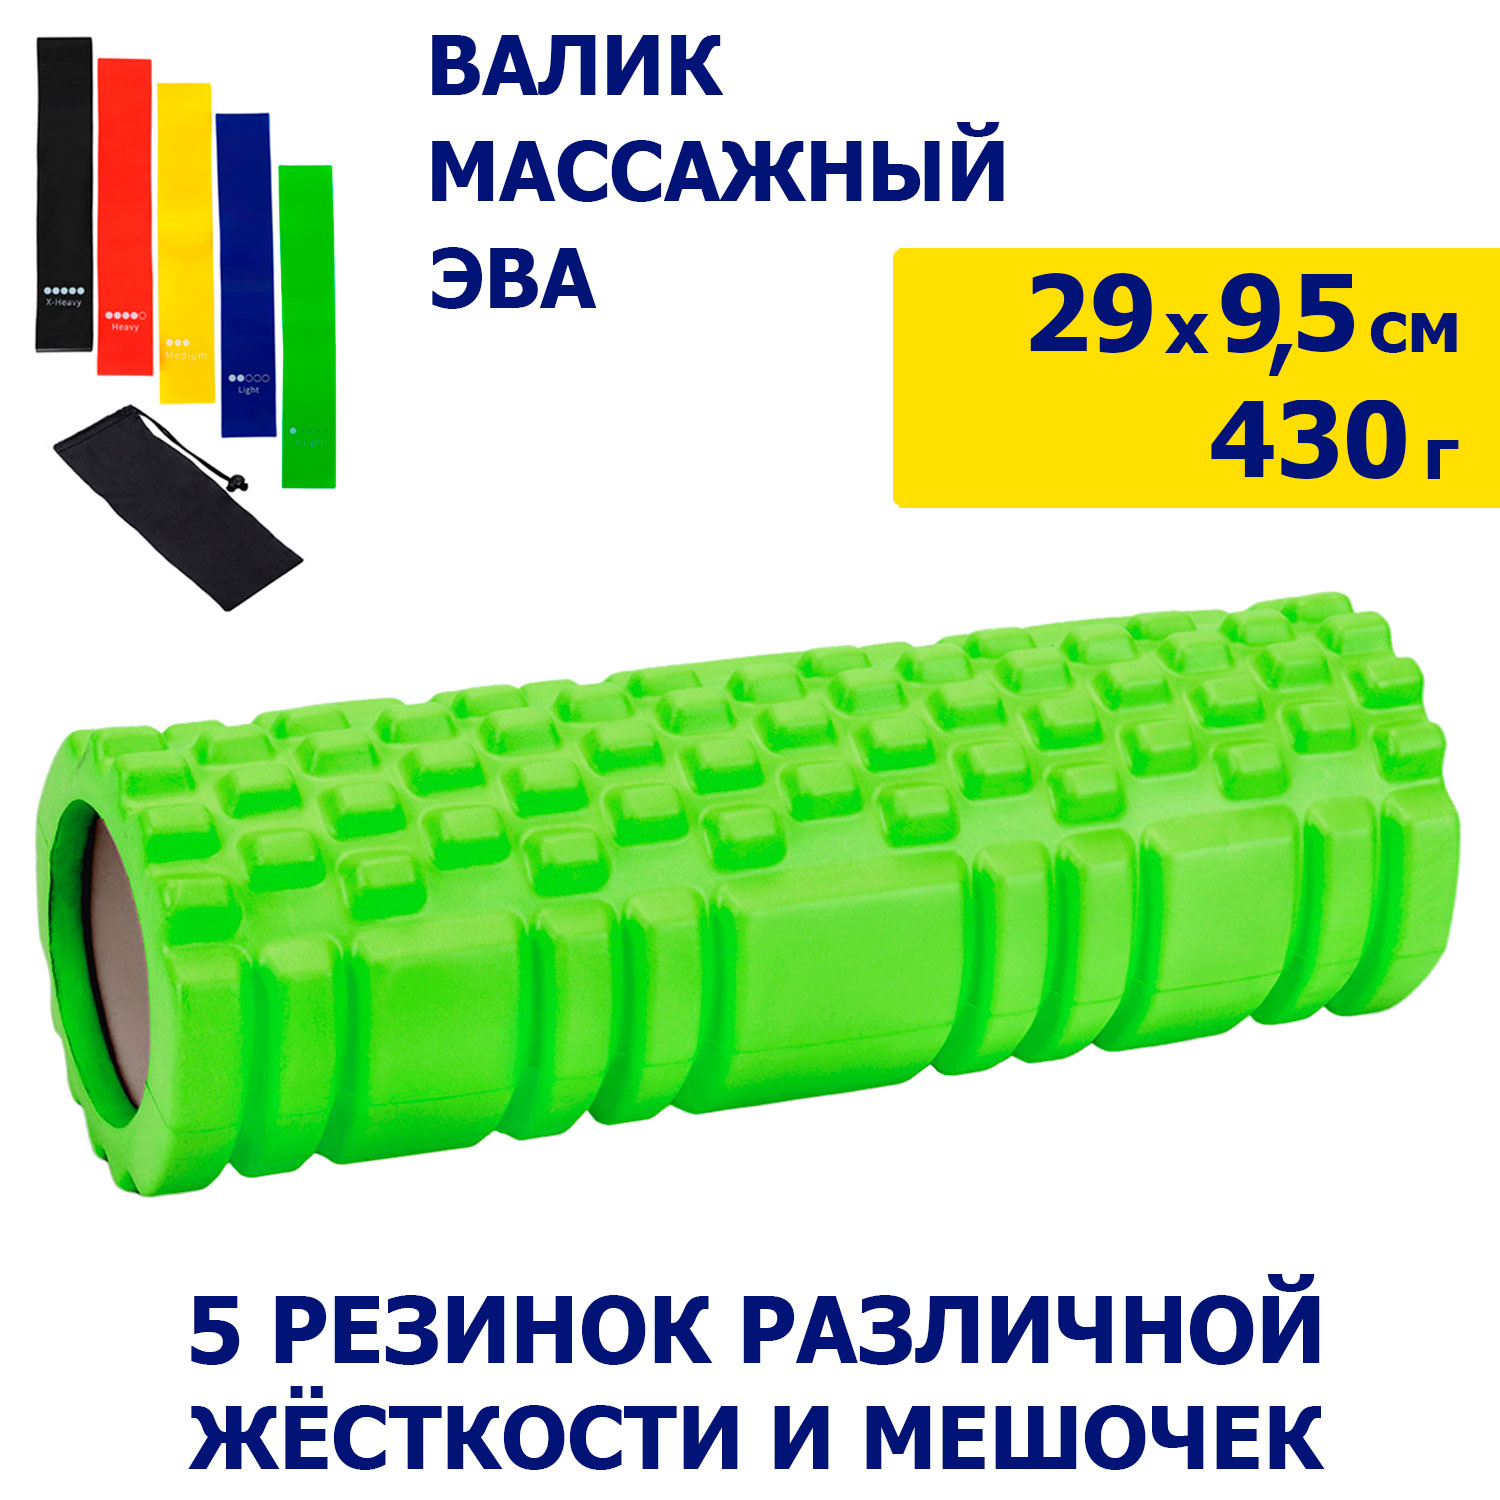 Валик массажный 29х9,5 см + комплект гимнастических резинок 5 шт., JB4300139